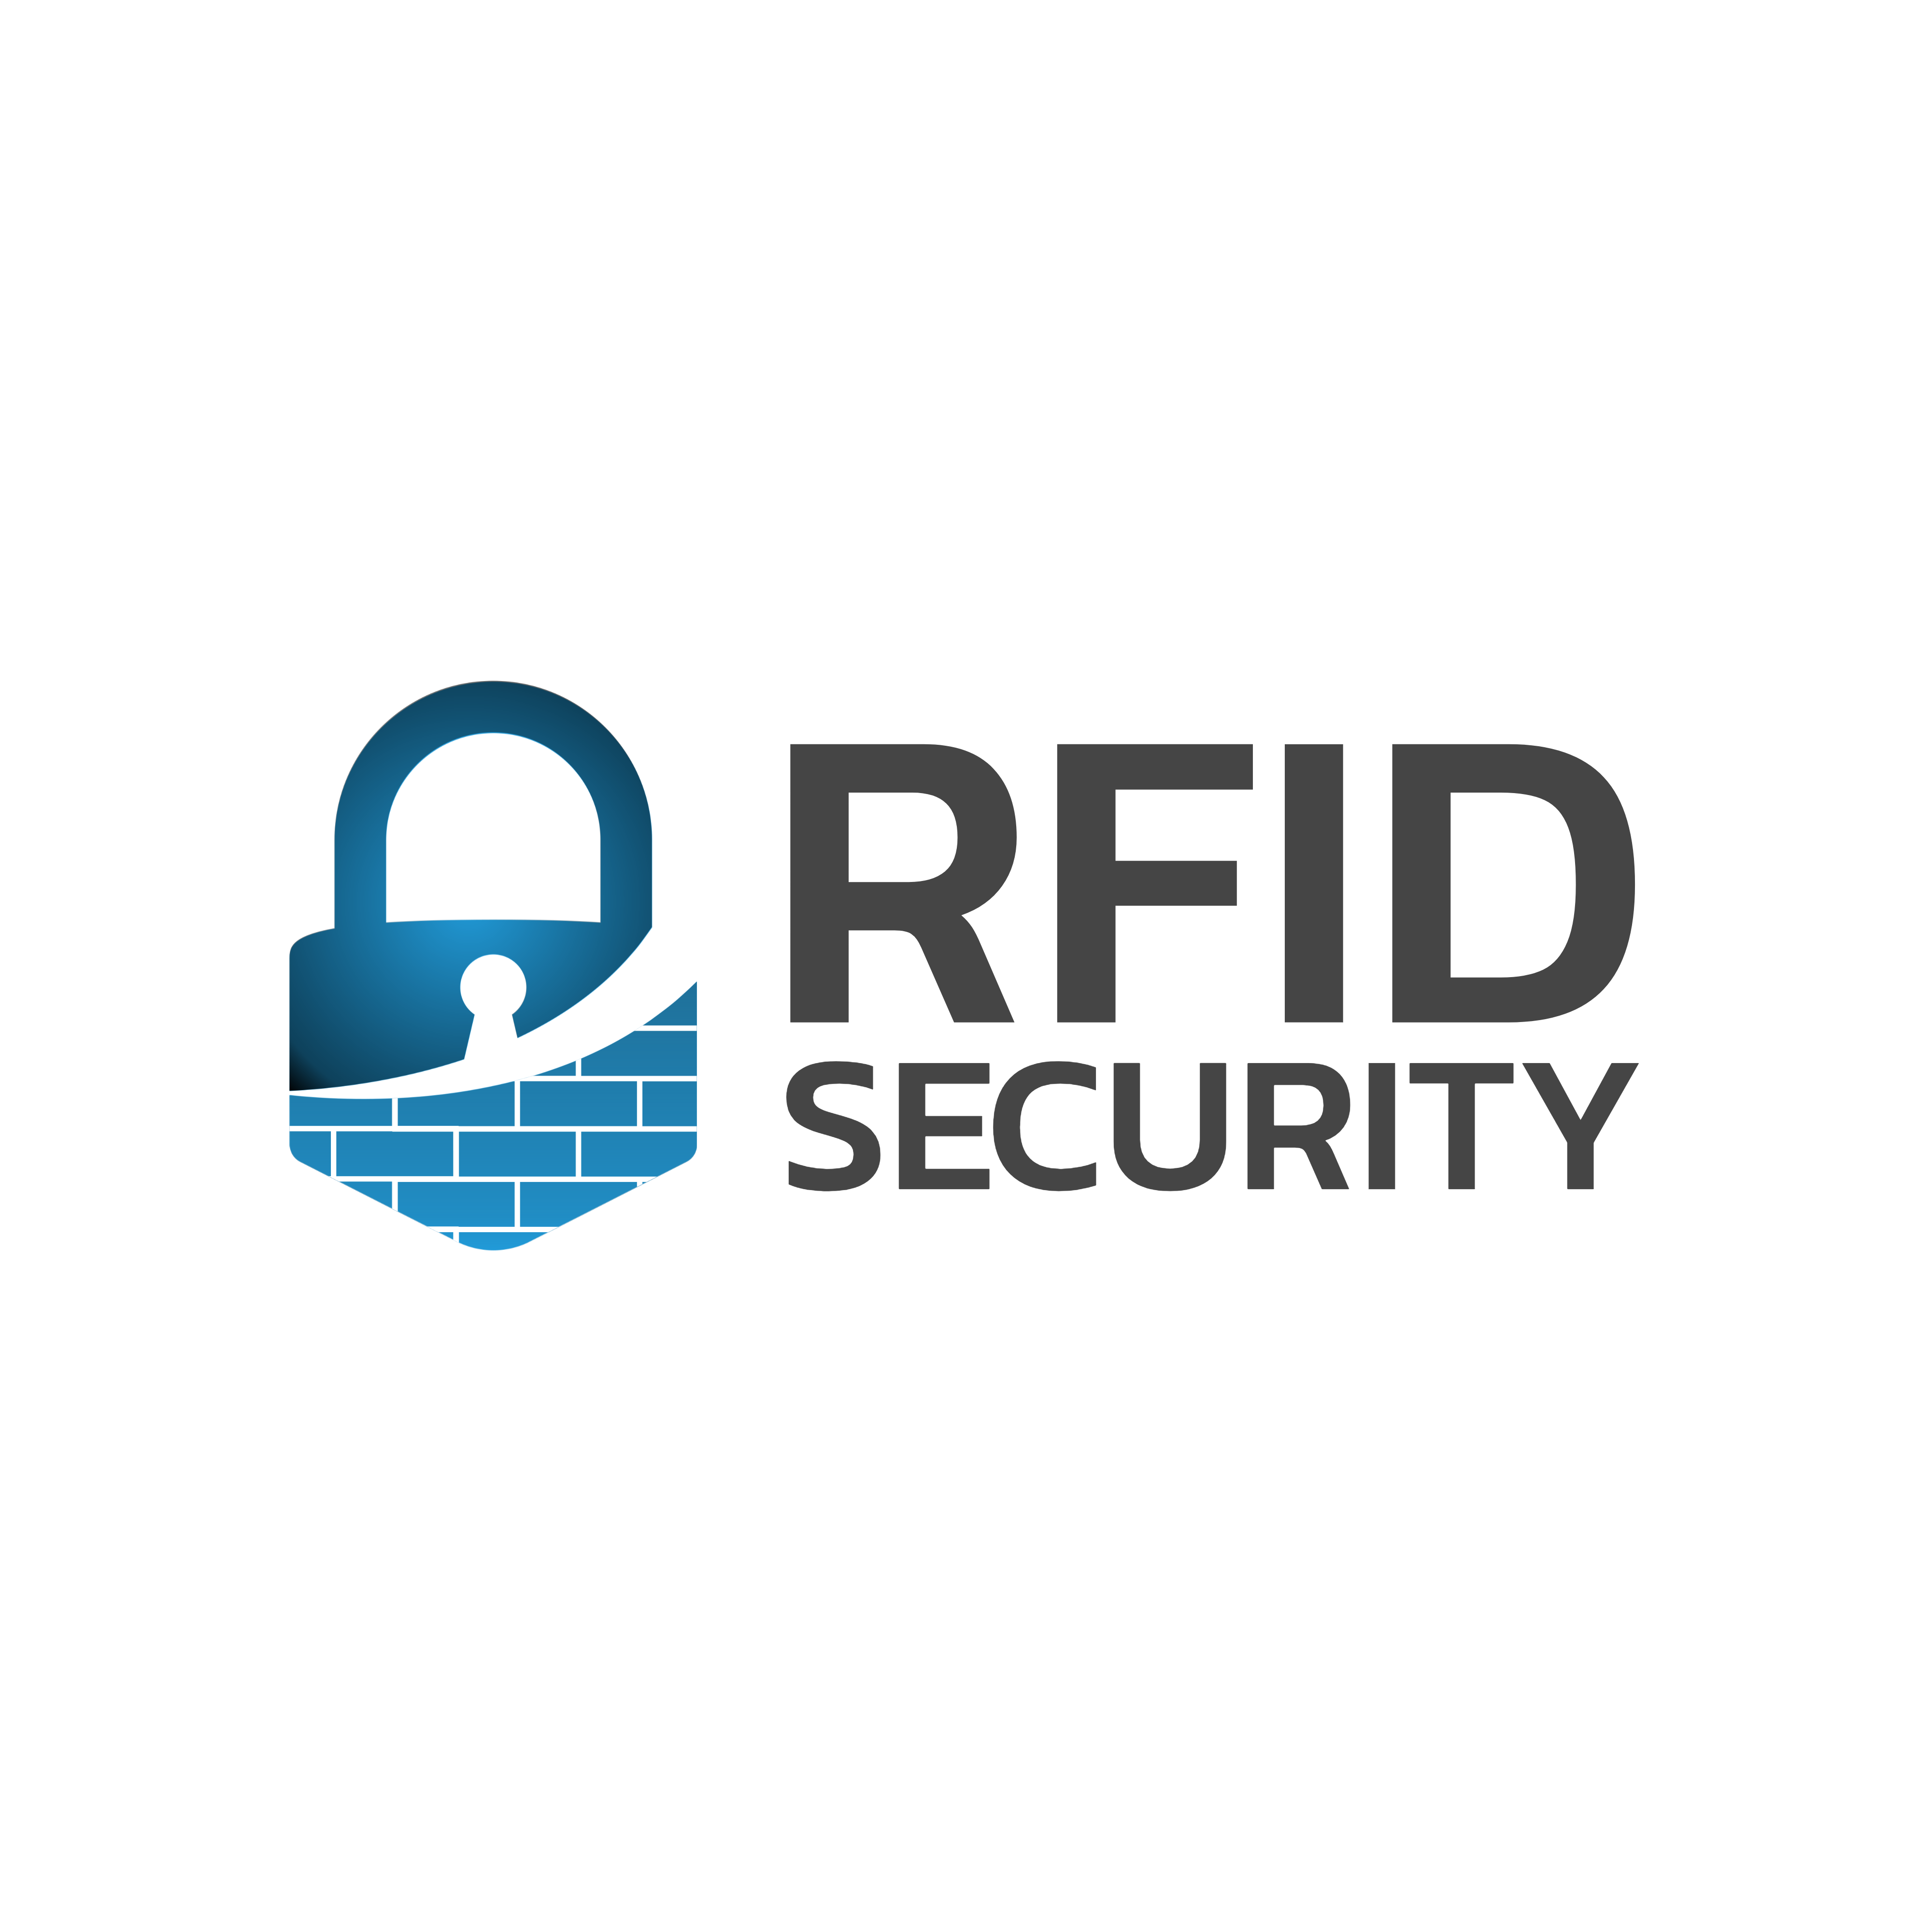 RFID Security Tools